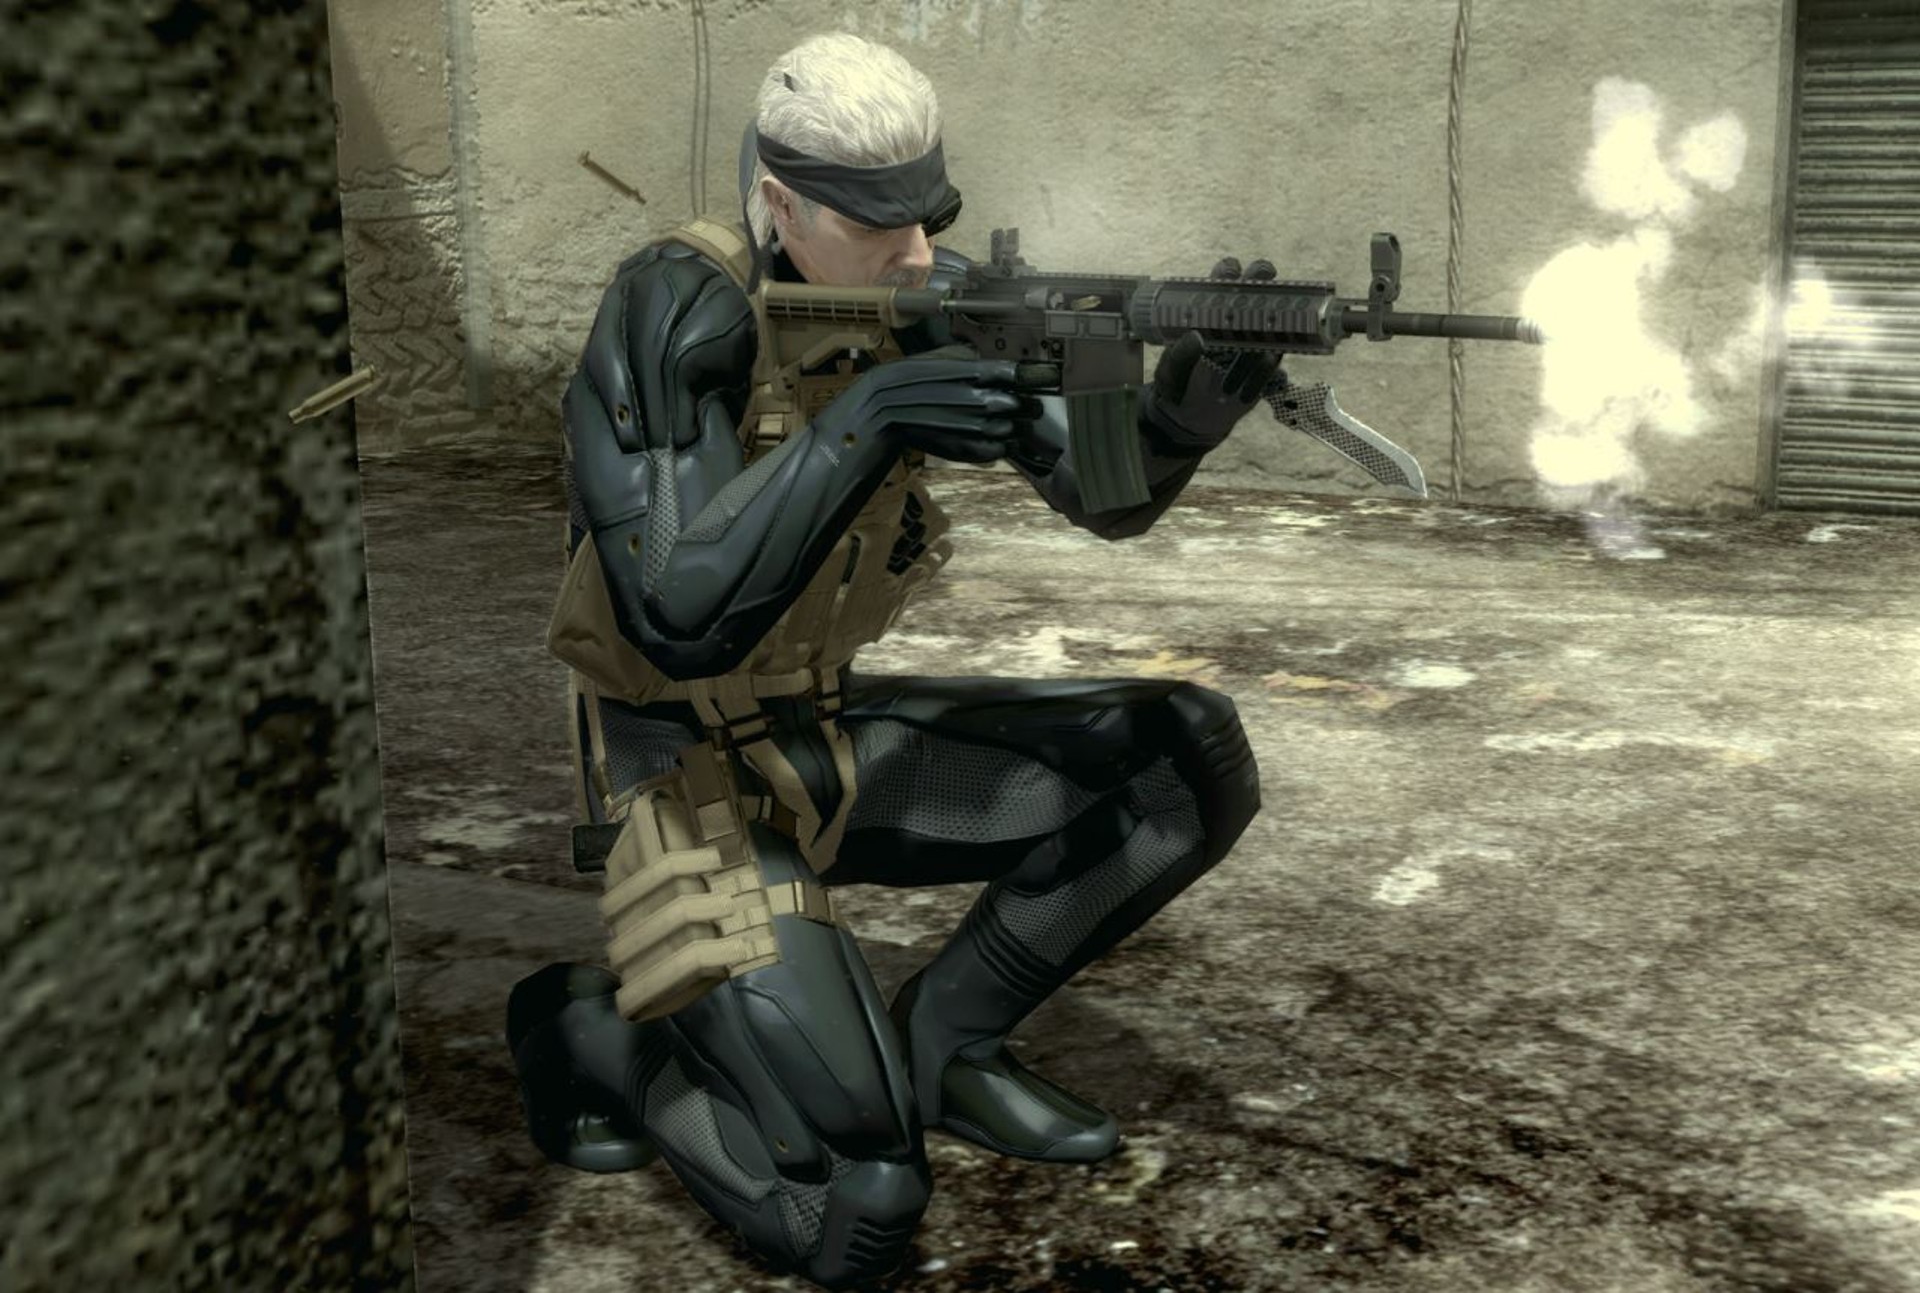 ทีมงาน Konami ไม่อยากพอร์ต Metal Gear Solid 4 ให้ Xbox 360 เพราะเครื่องยังใช้ DVD อยู่